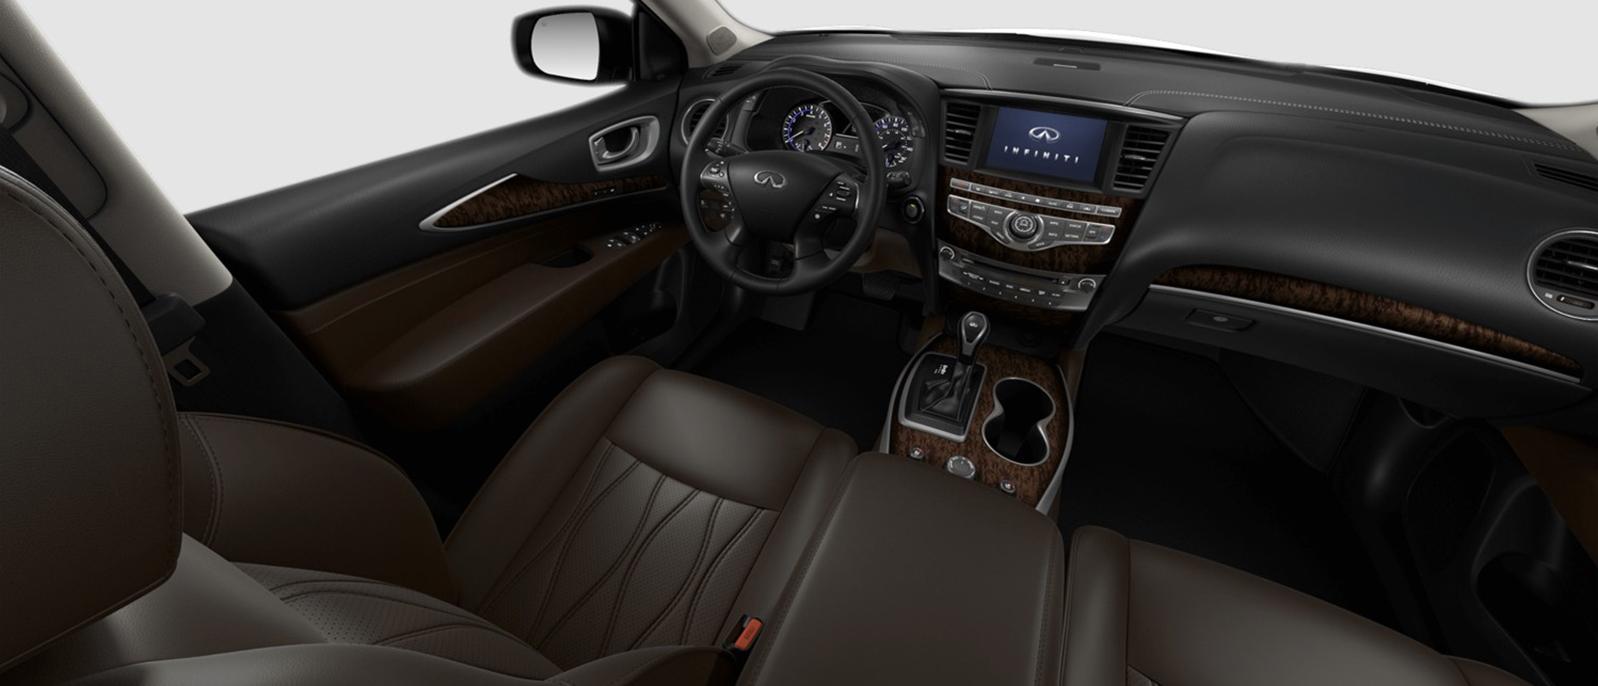 INFINITI QX60 Luxe trim interior in Java color scheme.